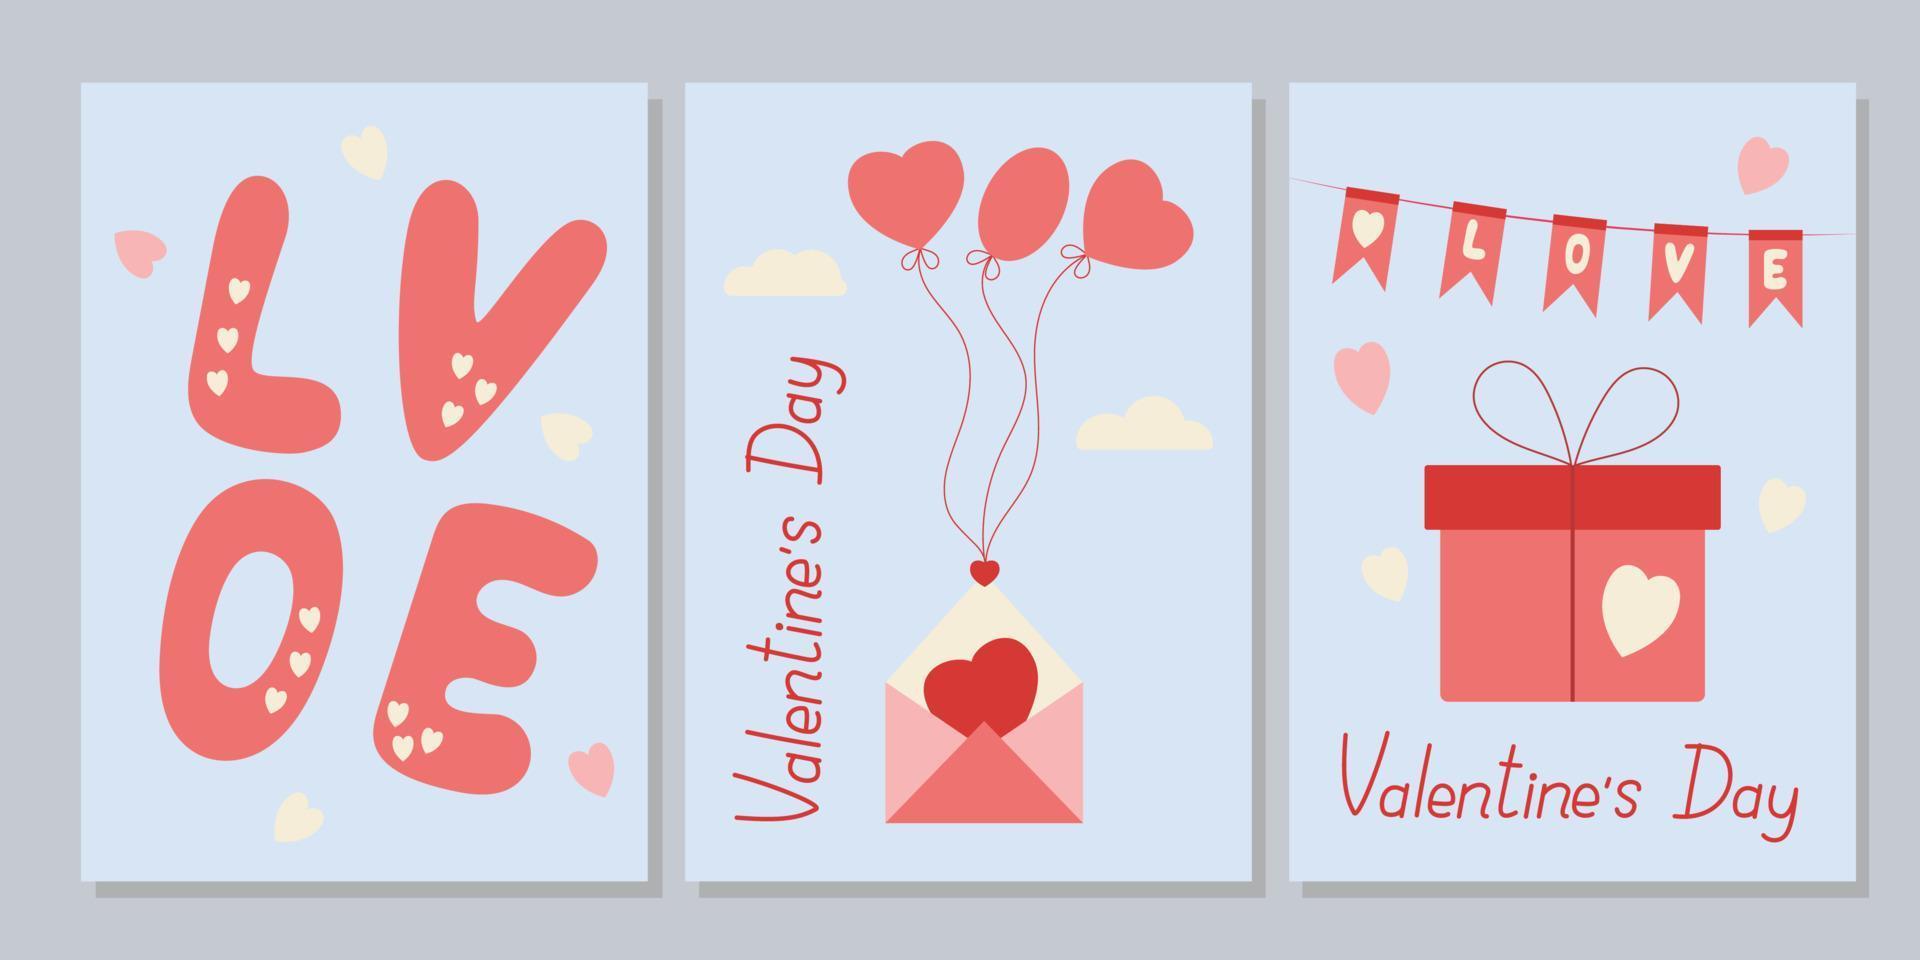 druckbare kartenvorlage für den valentinstag. Layout in a6. Valentinstag-Karten-Set. Kritzeleien und Skizzen Vektorgrafiken. vektor